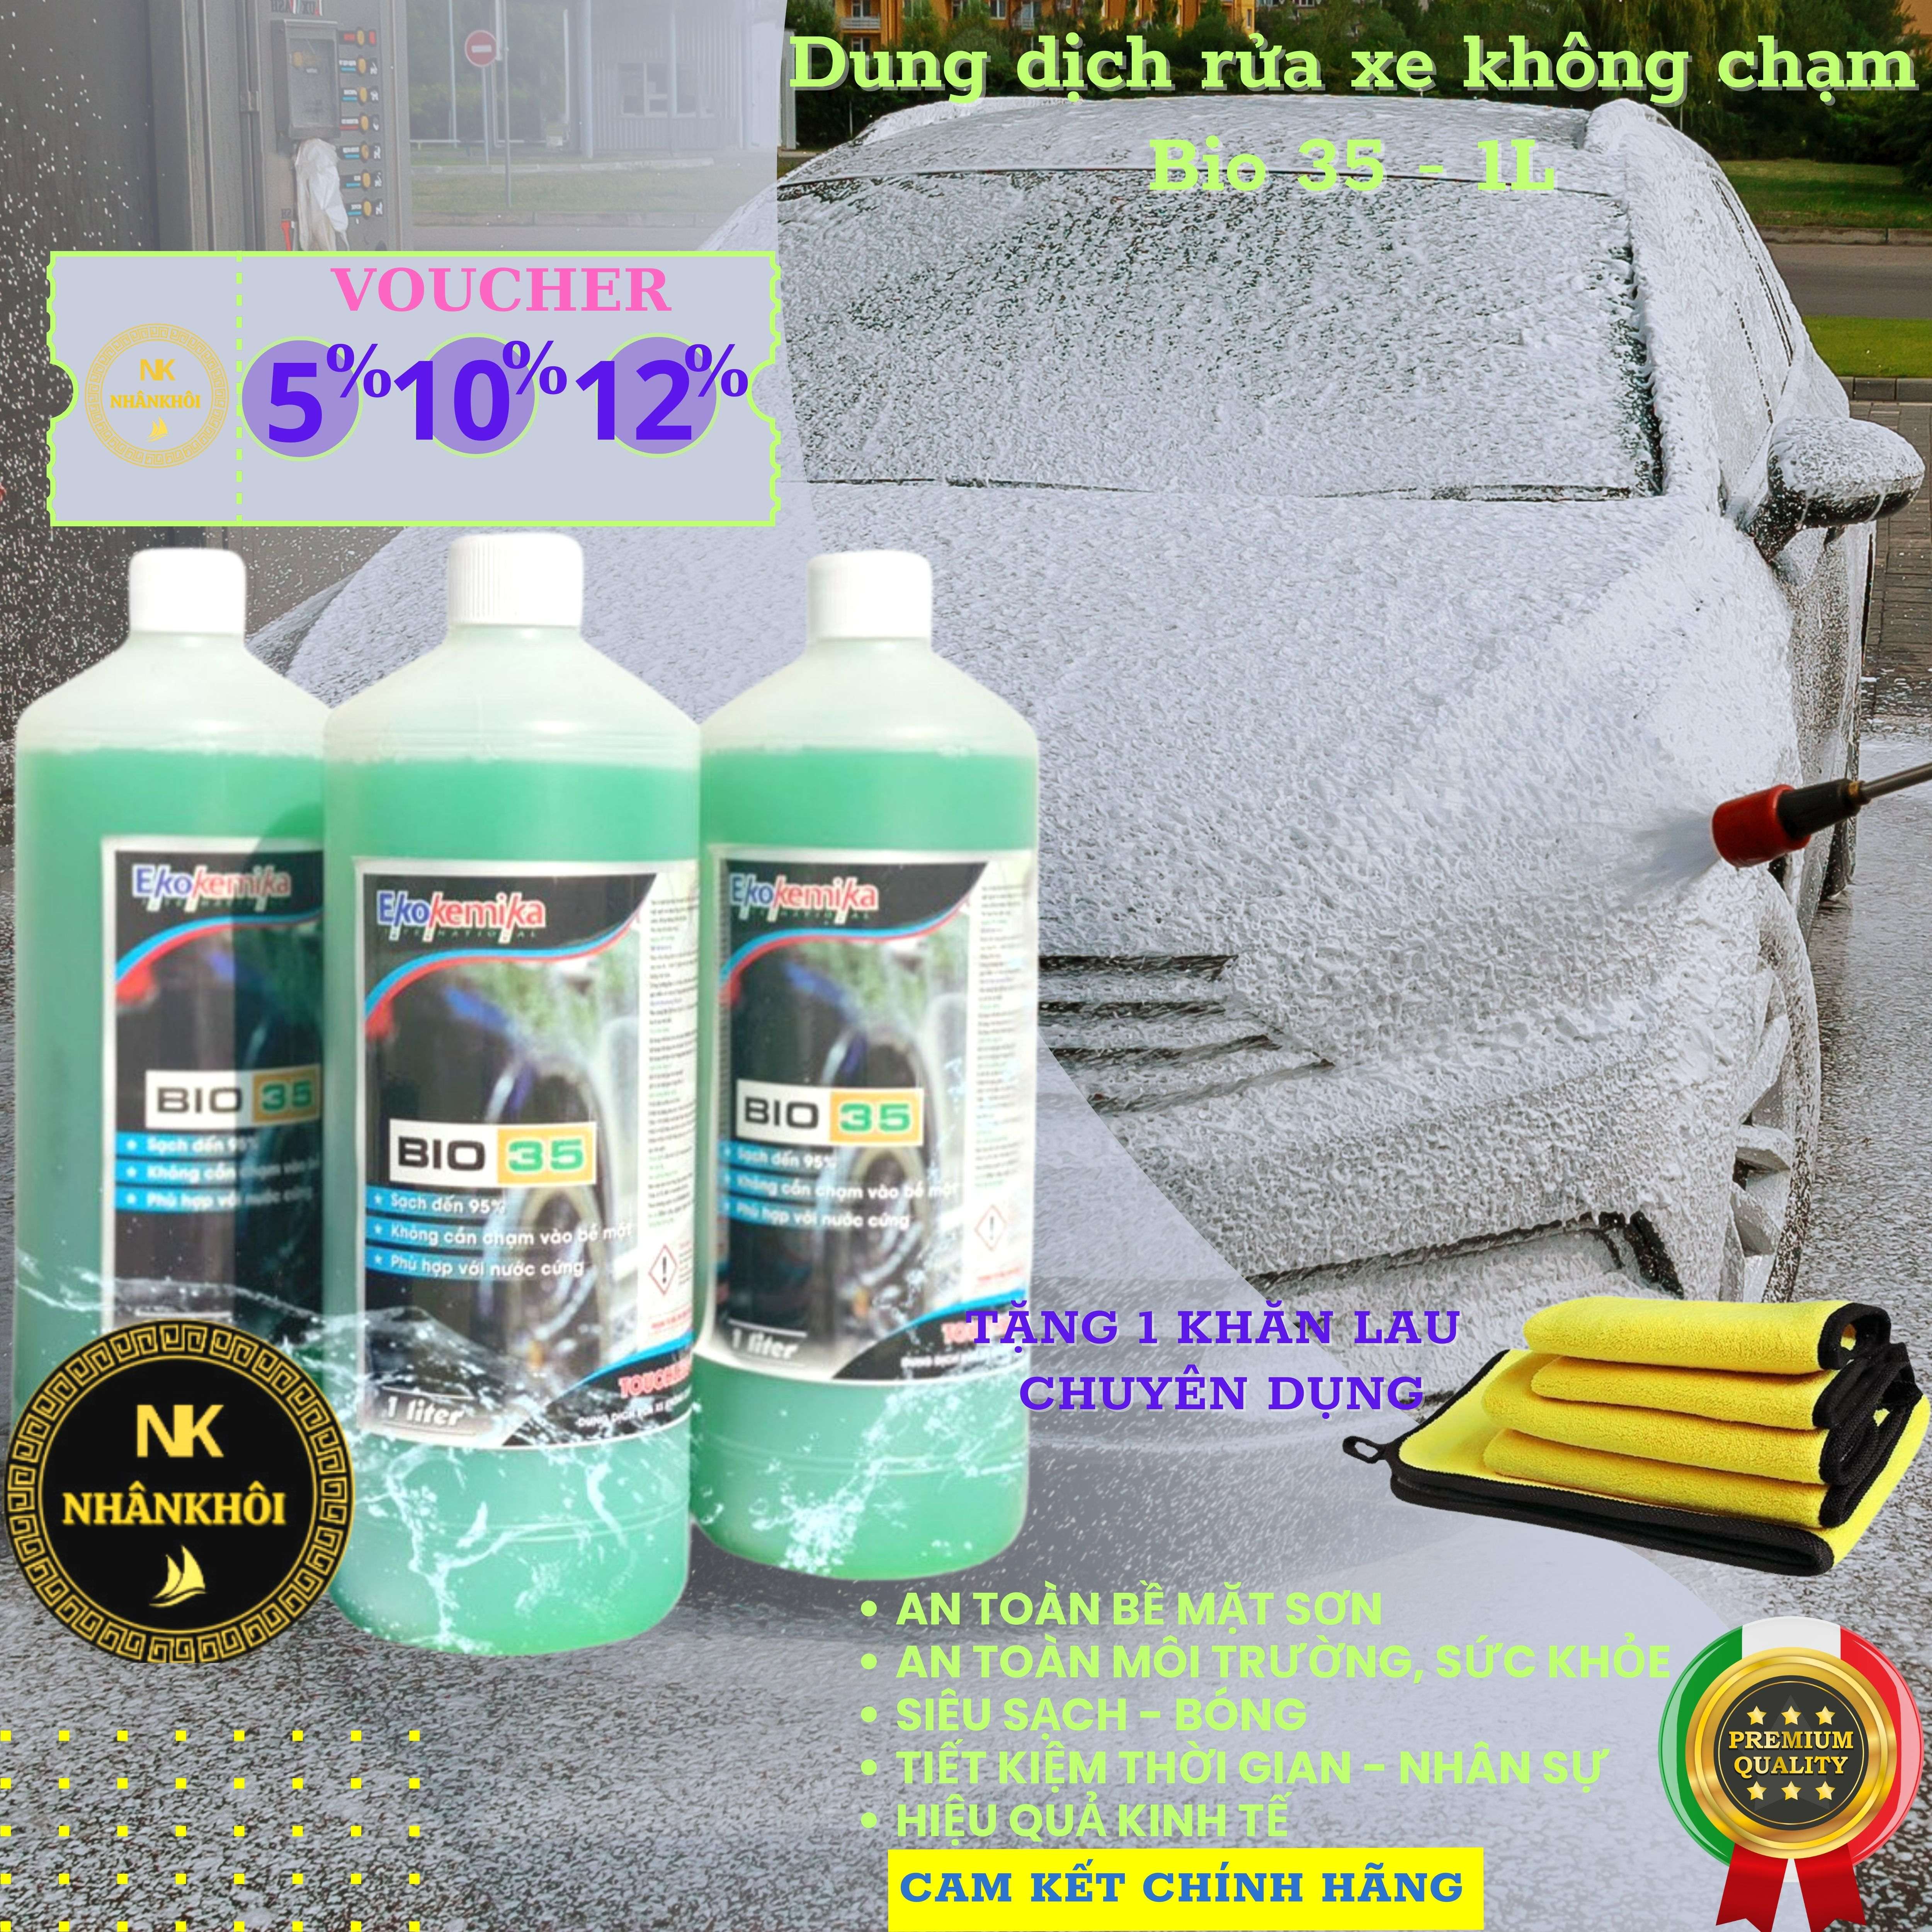 Bio 35 - 1 lít - Dung dịch rửa xe không chạm - Nước rửa xe bọt tuyết - Ekokemika